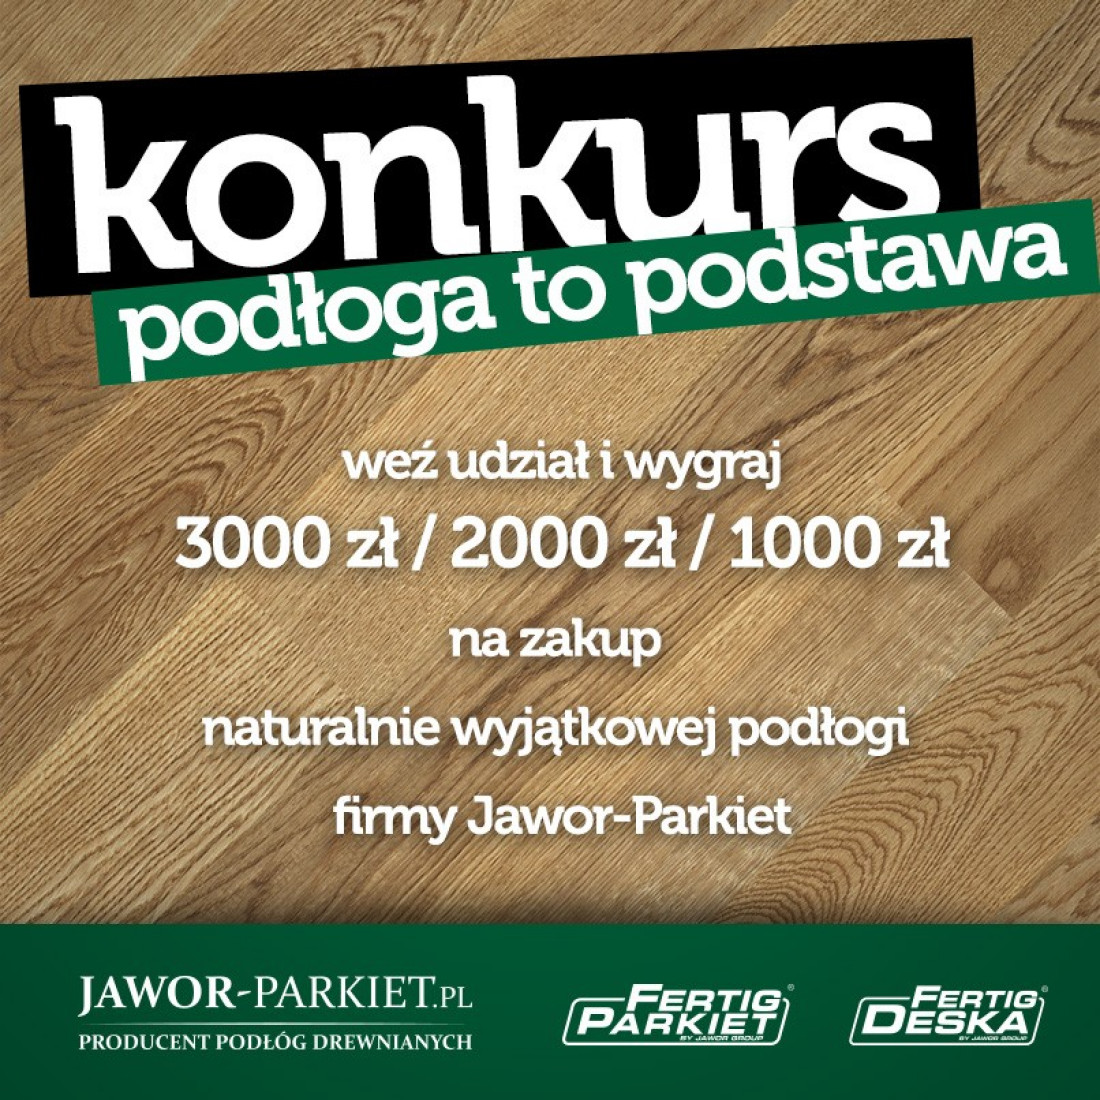 Weź udział w konkursie i wygraj drewnianą podłogę od Jawor-Parkiet!